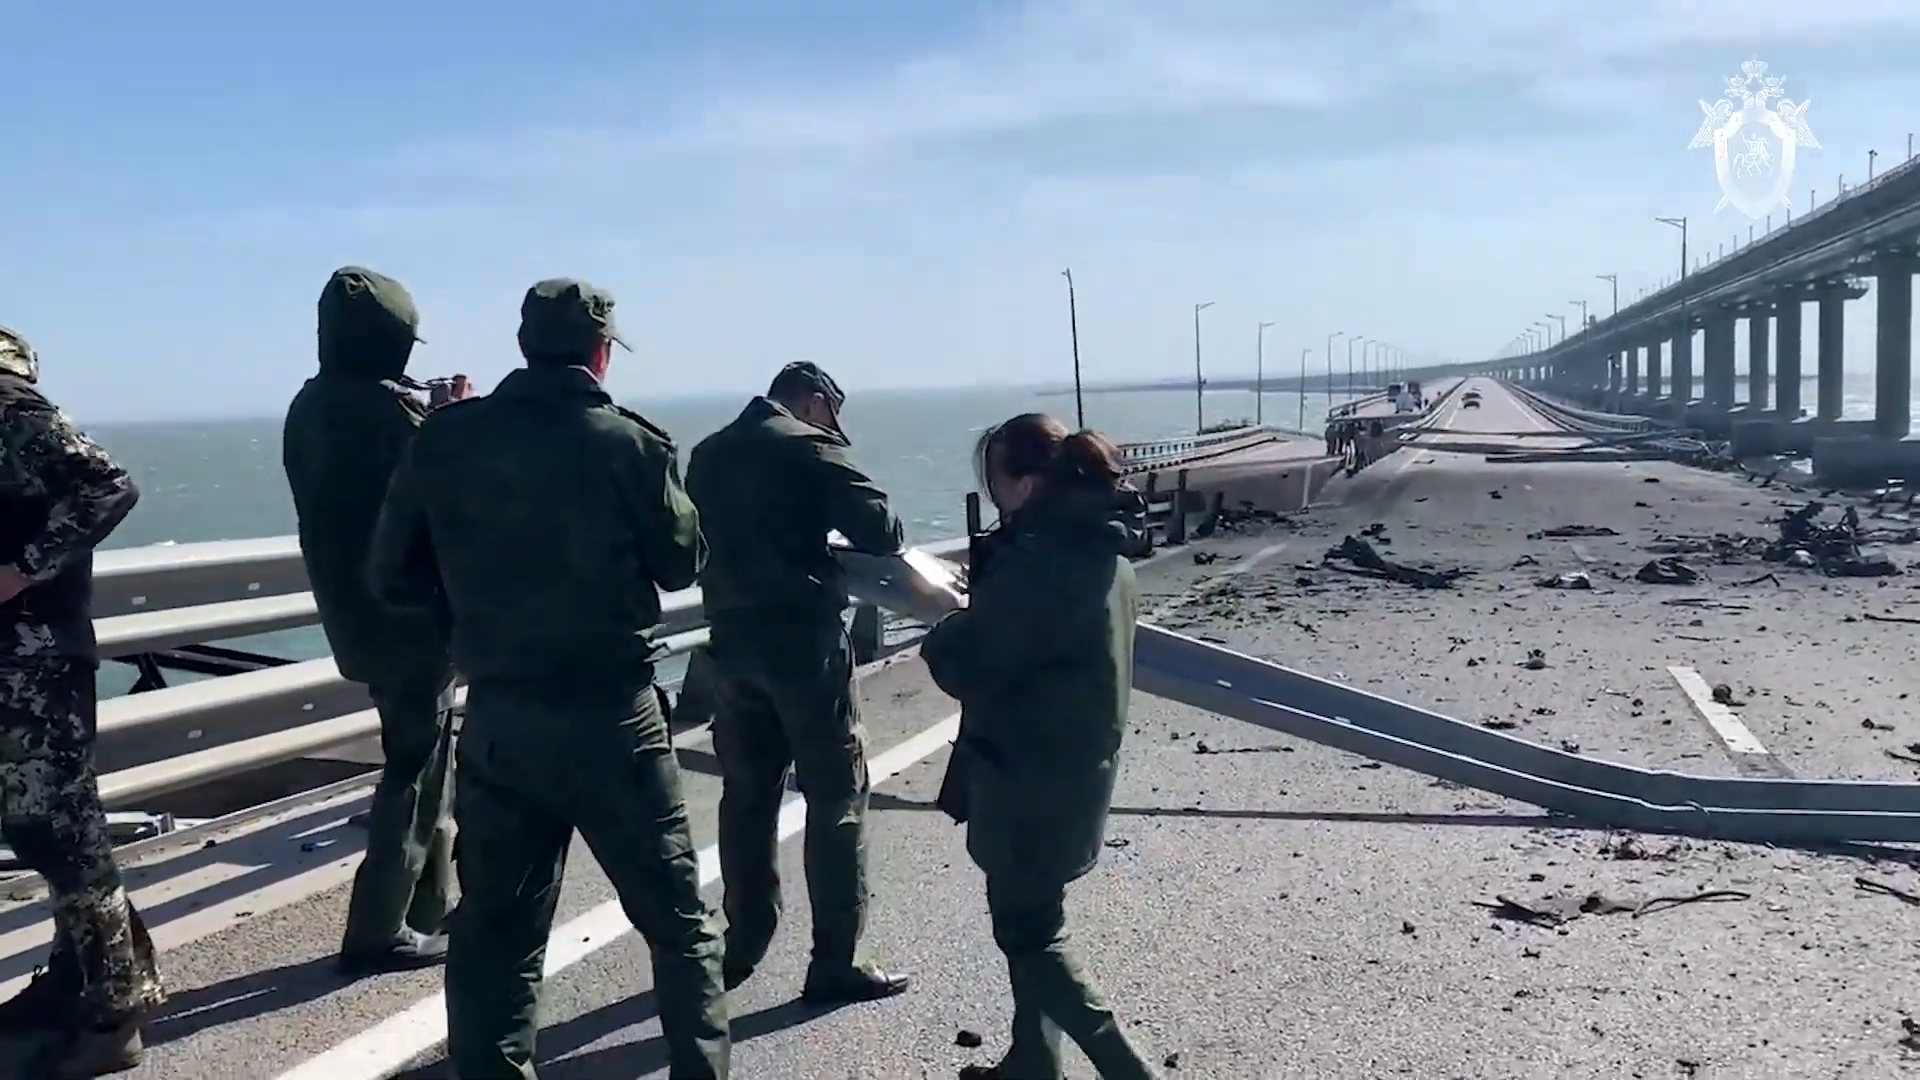 Удар ракетами по крымскому мосту